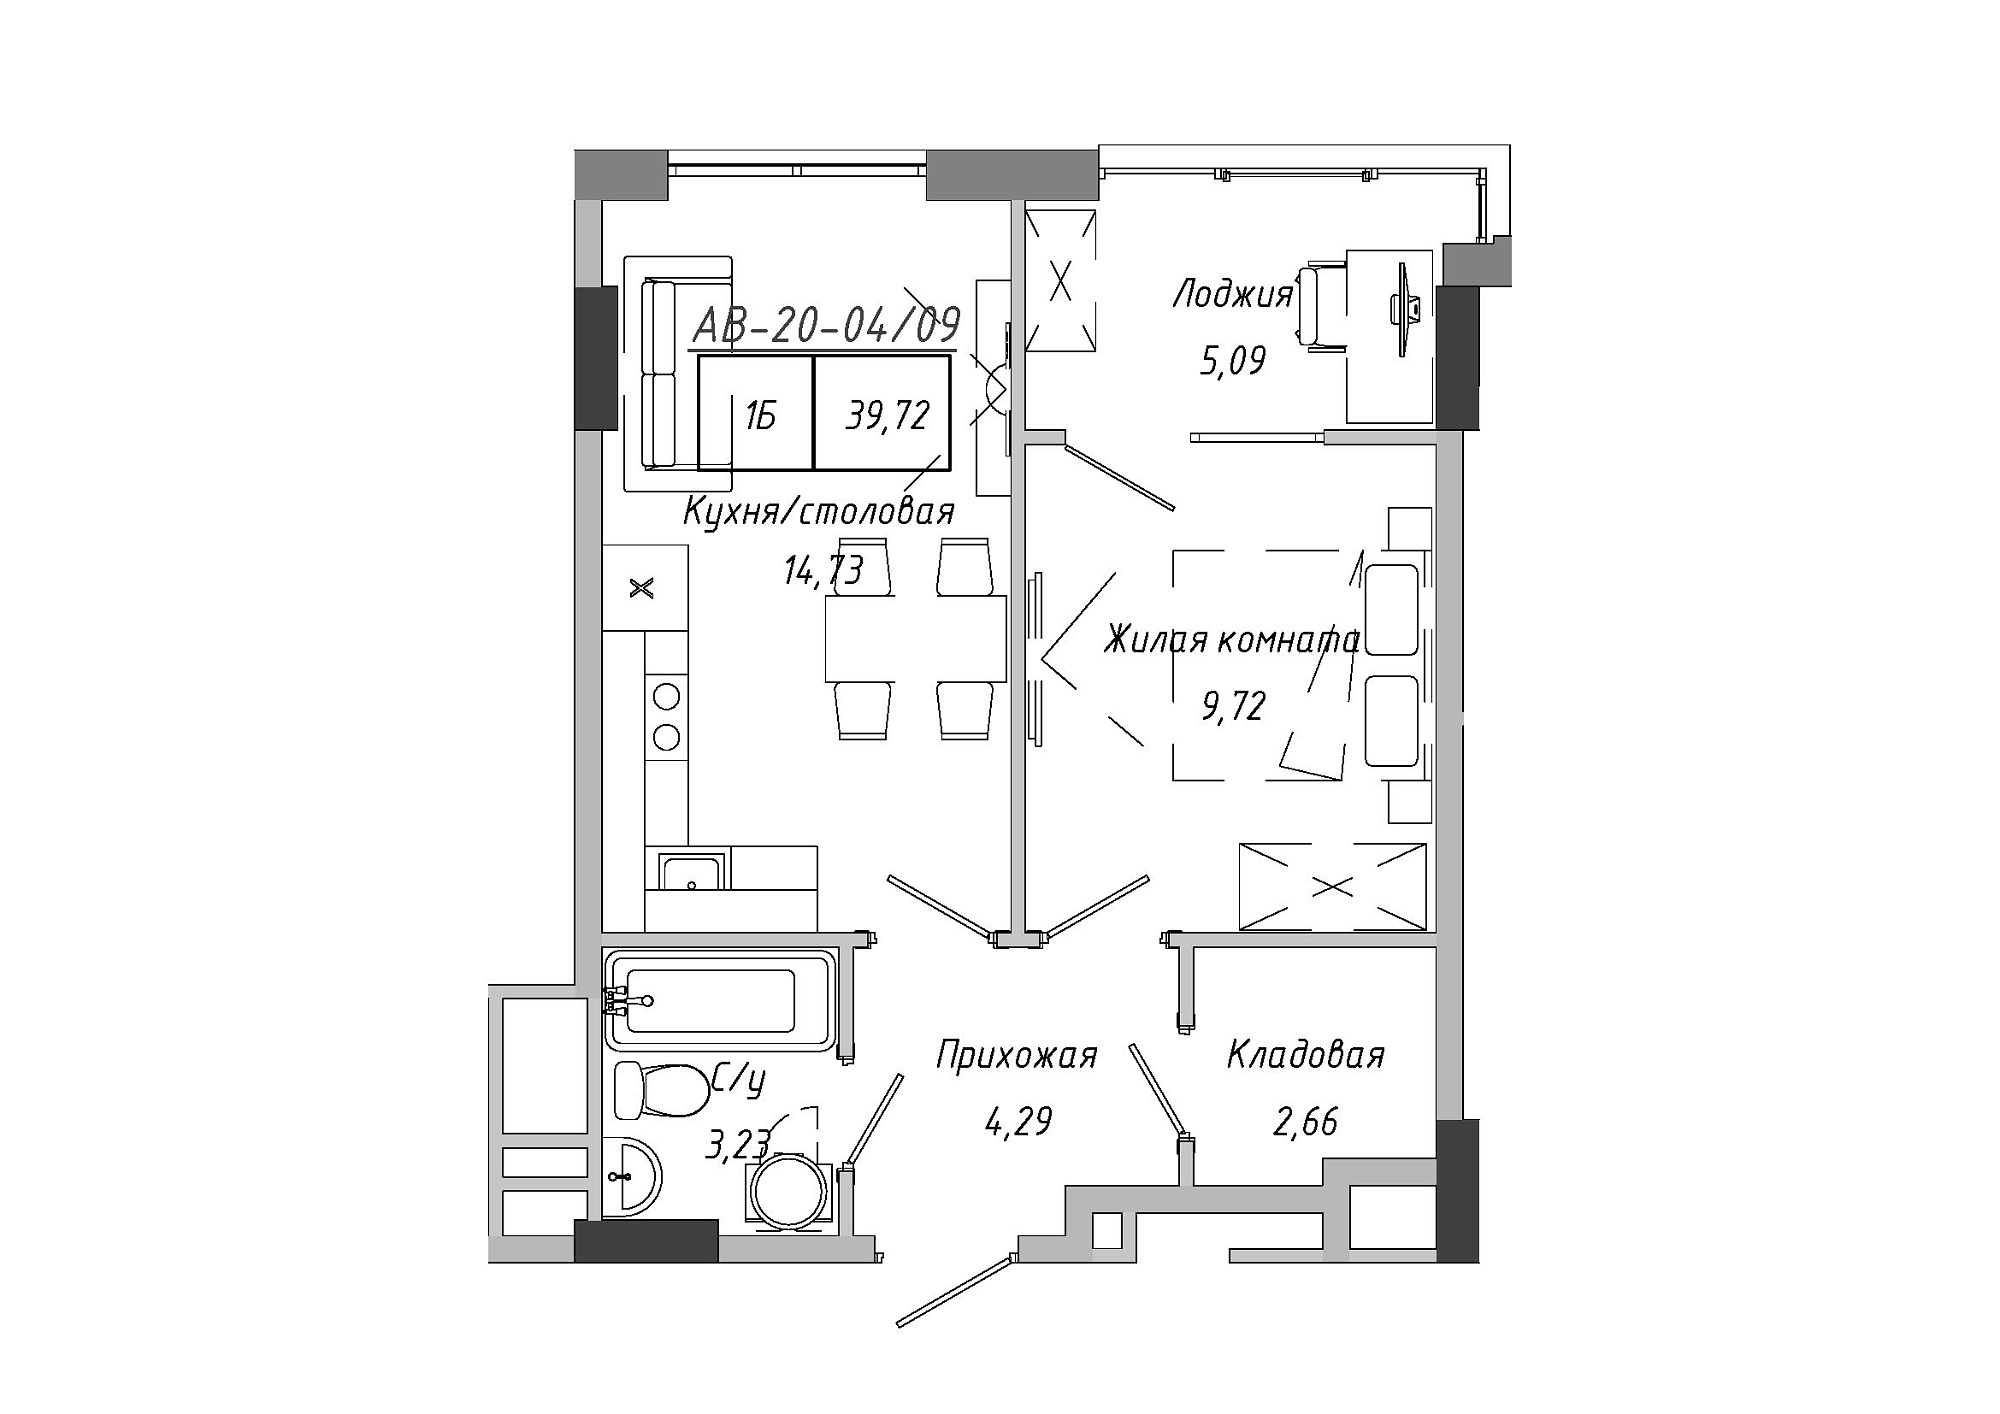 Планировка 1-к квартира площей 39.72м2, AB-20-04/00009.